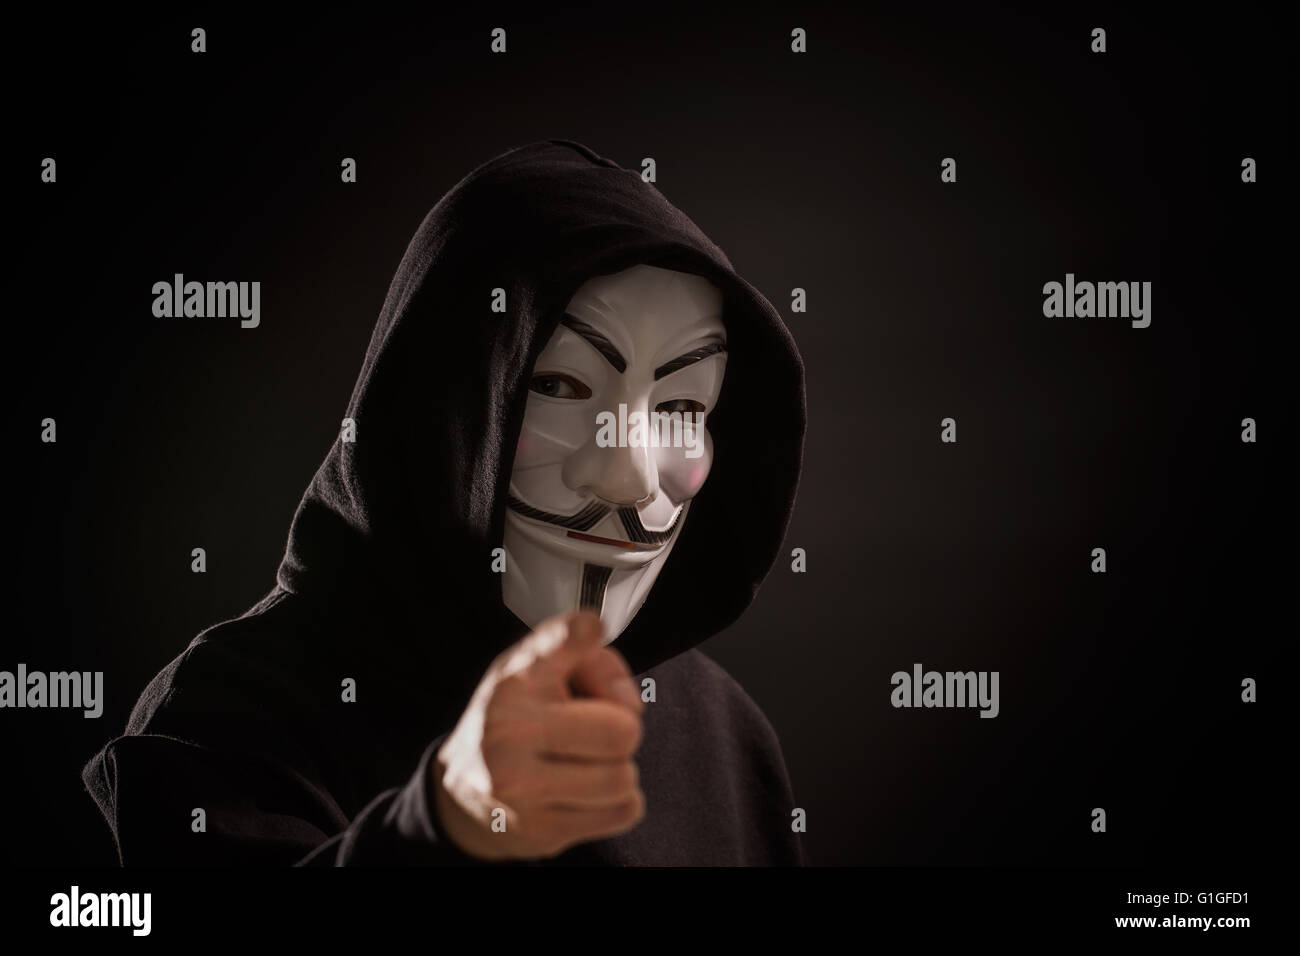 Bełchatow, Polonia - Dicembre 06, 2015: un uomo che indossa la maschera della Vendetta - simbolo per la online gruppo hacktivist anonimo. Backg nero Foto Stock